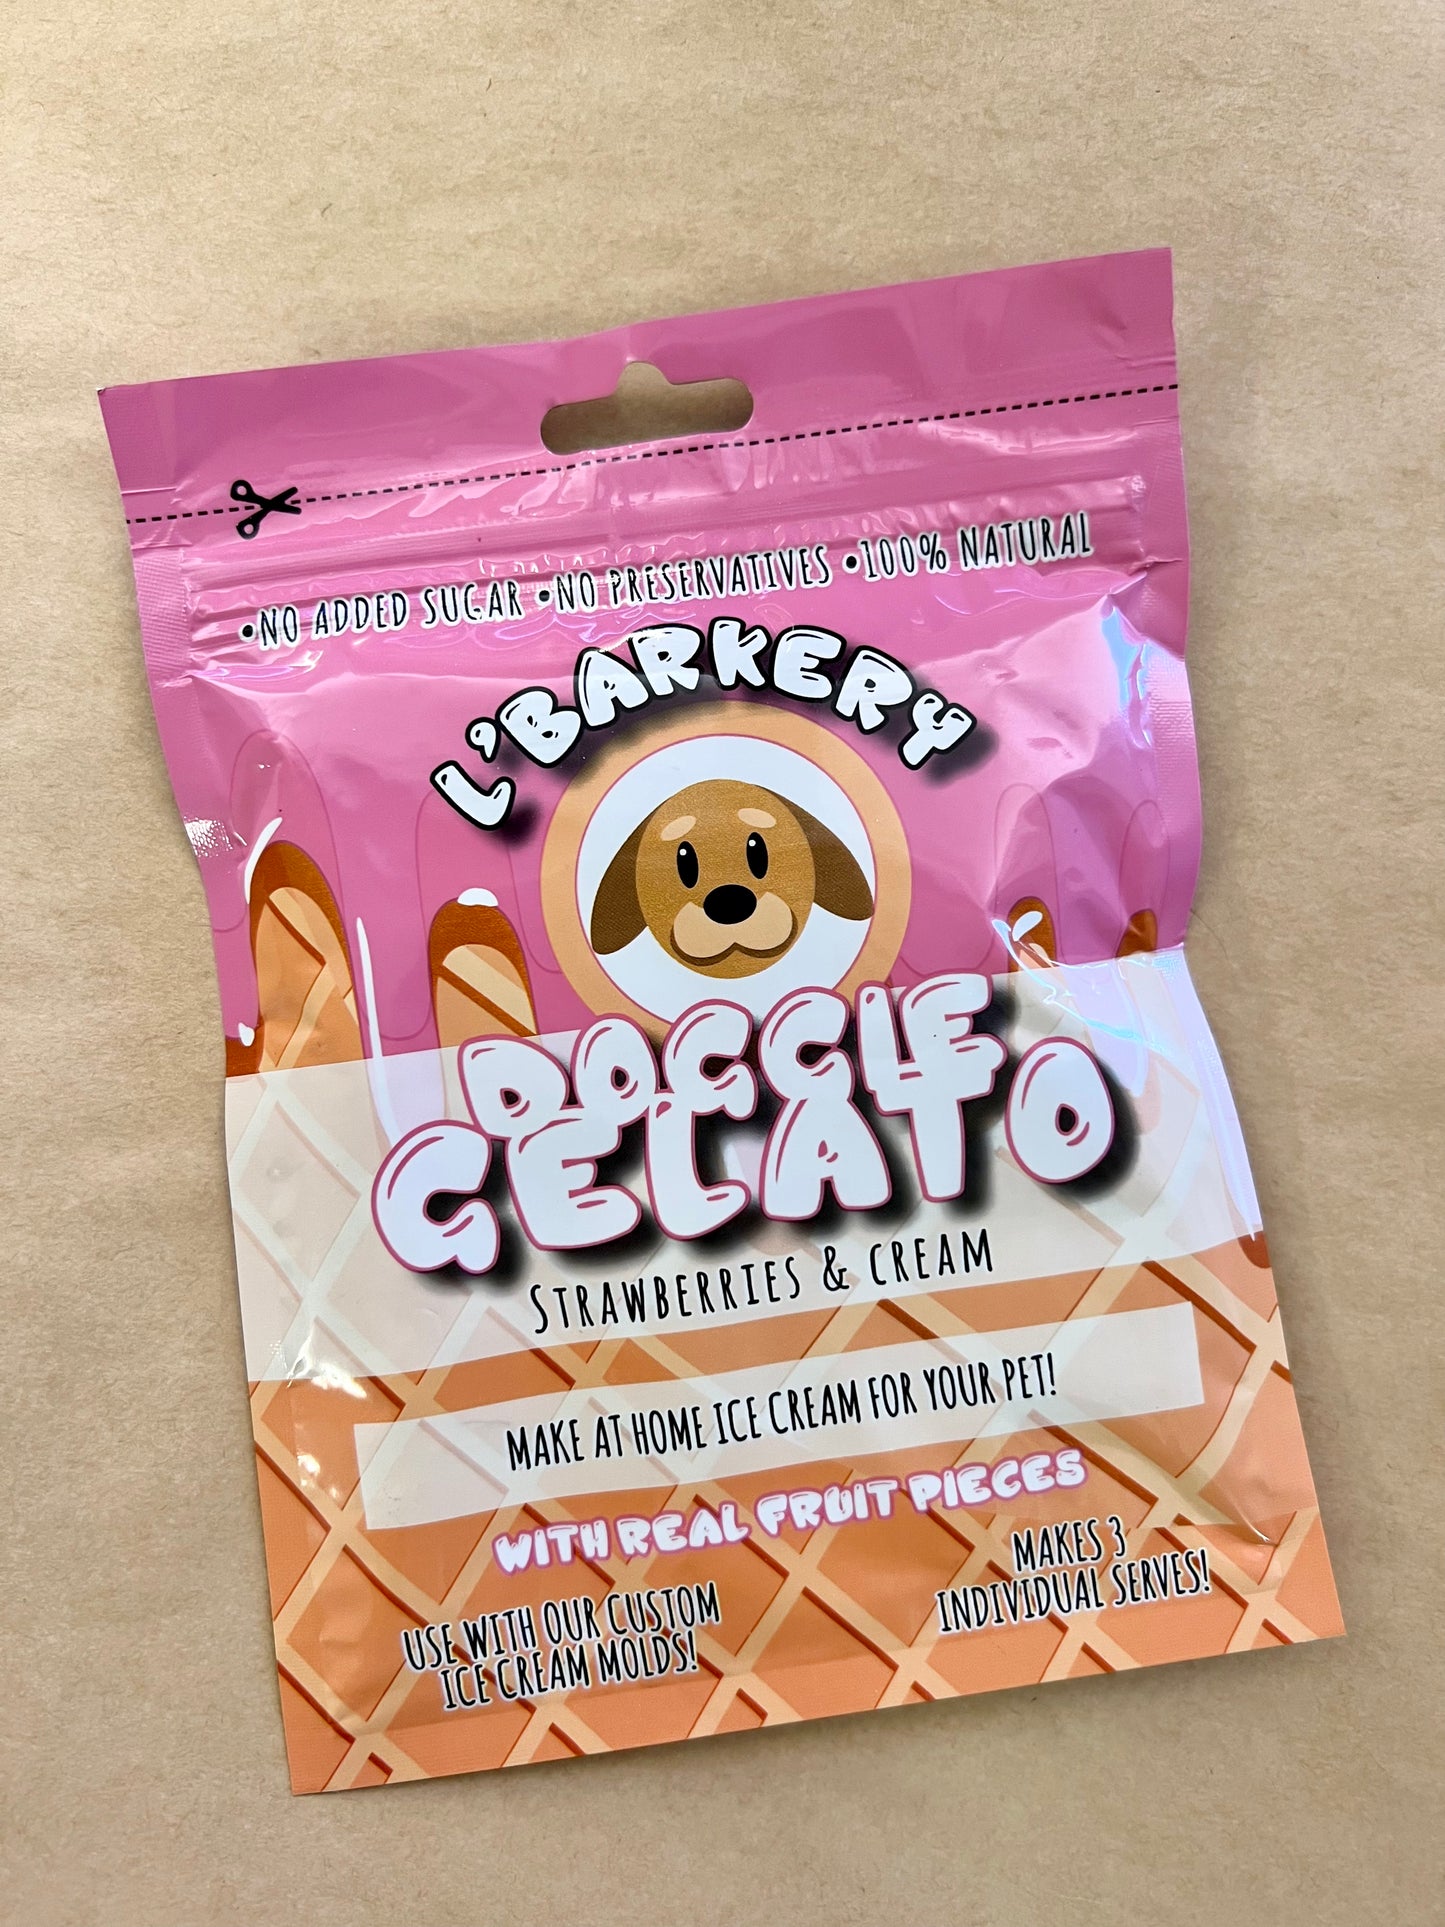 Doggie Gelato - Strawberry & Cream